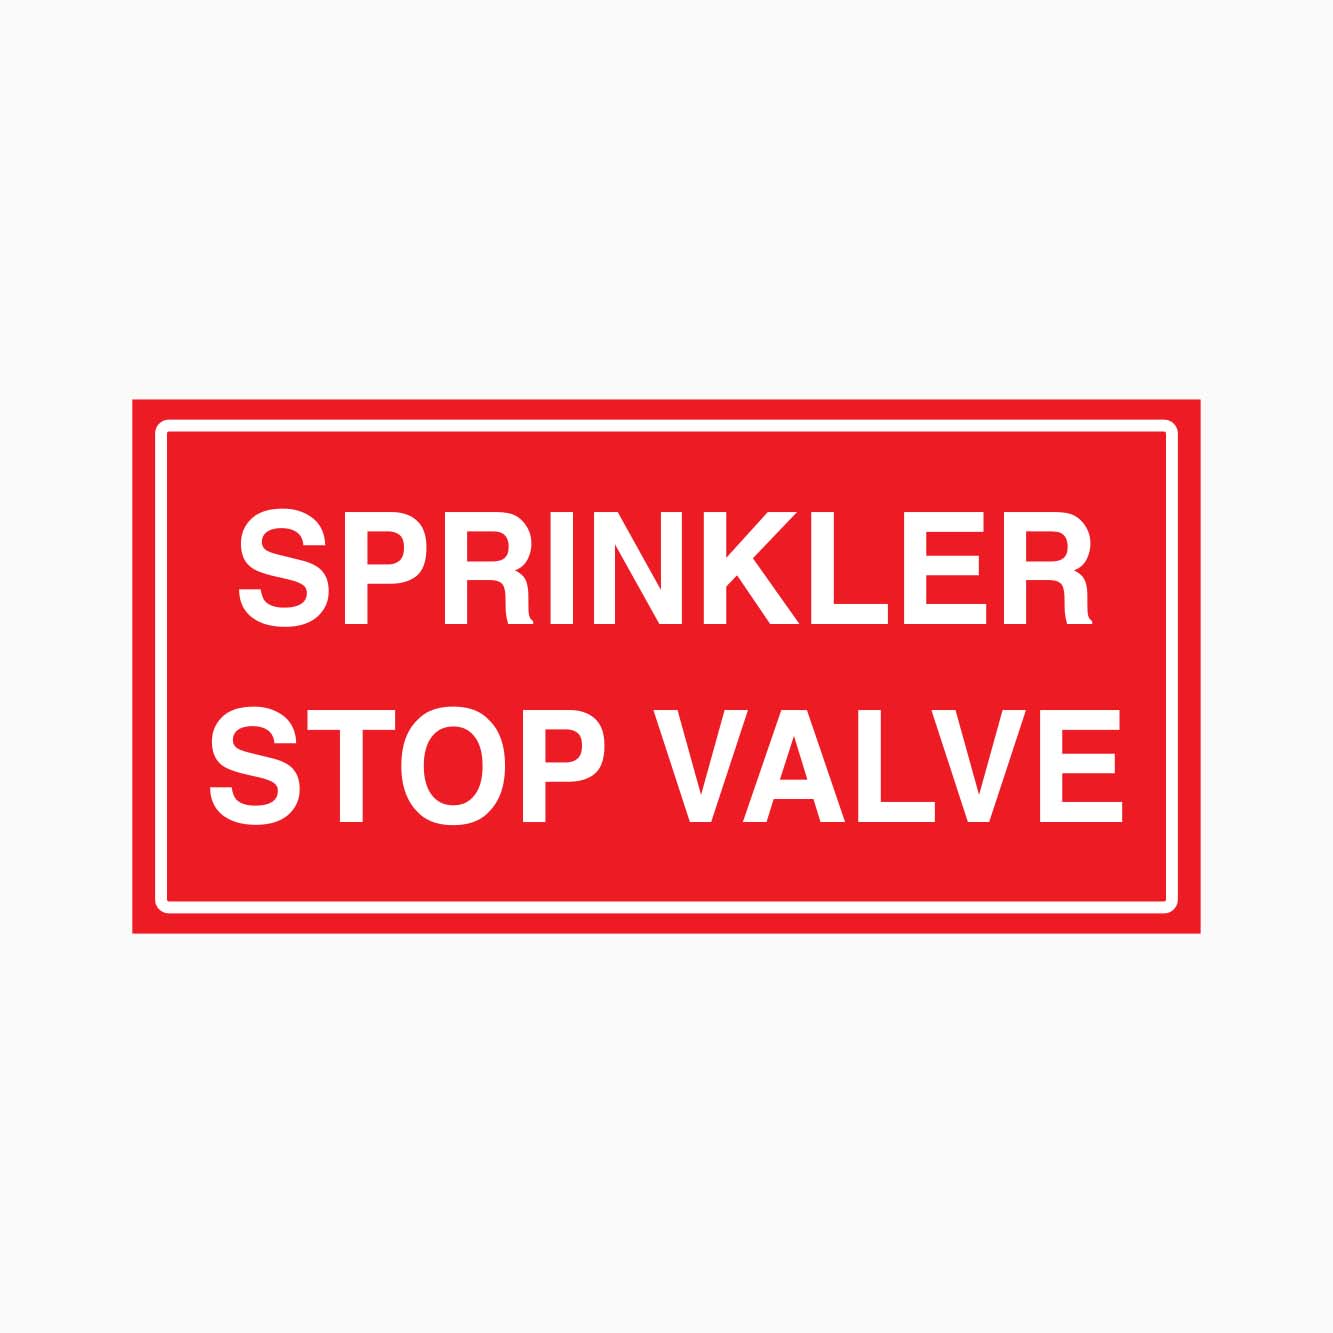 SPRINKLER STOP VALVE SIGN - GET SIGNS